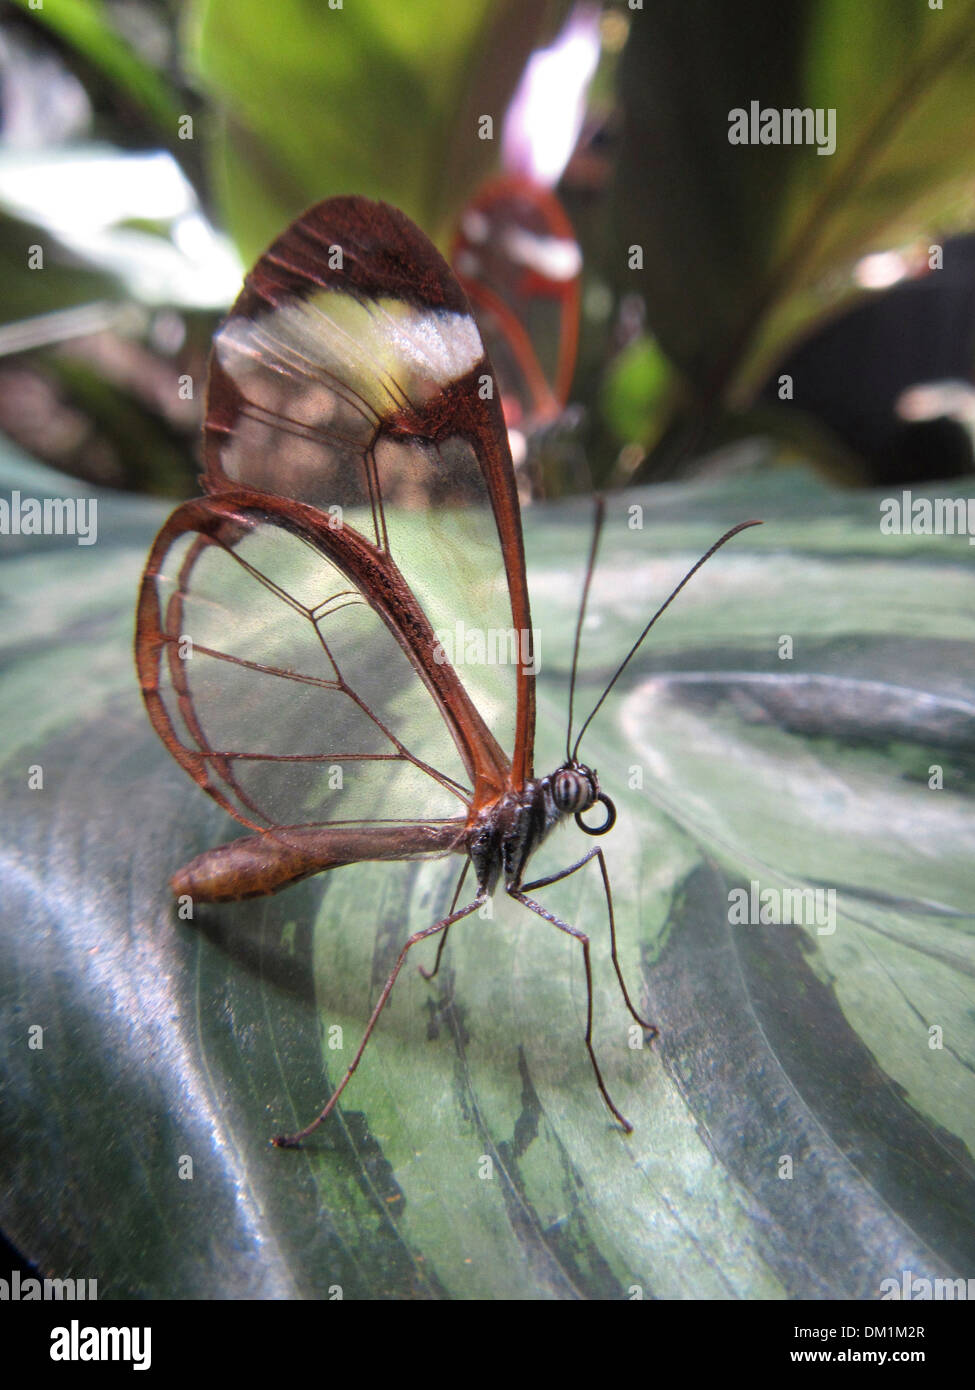 Glasswing Butterfly. La mariposa es un cepillo Glasswinged-footed mariposas, y es miembro de la subfamilia Danainae. Foto de stock